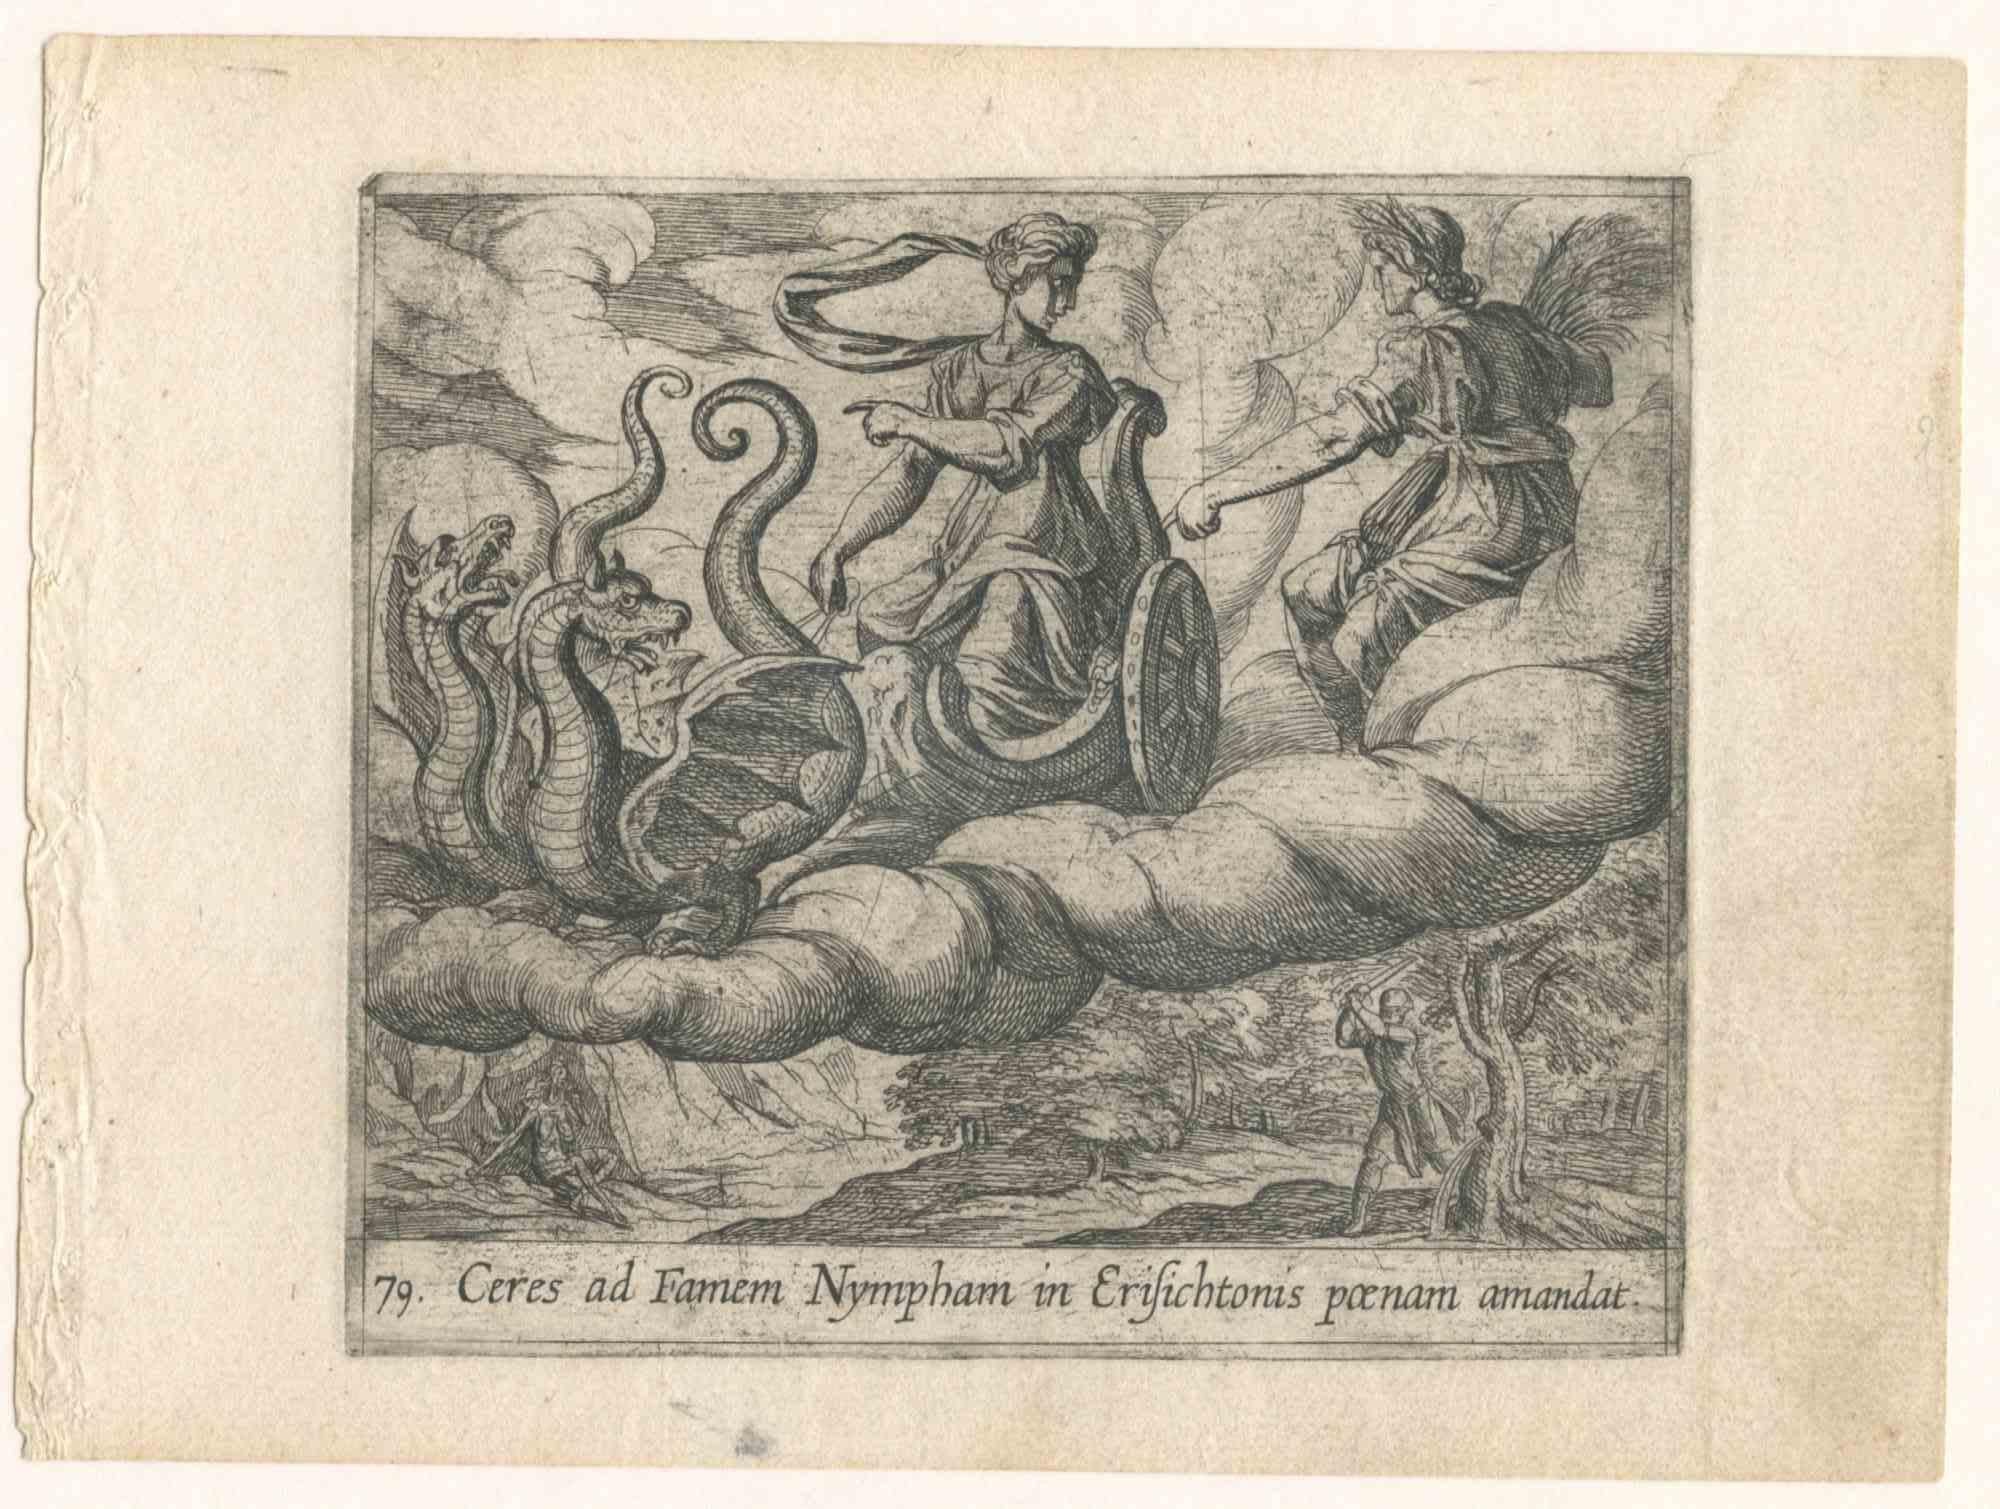 Ovid's Metamorphosis Series  - Set of 4 Original Etchings - 1606 - Old Masters Print by Unknown